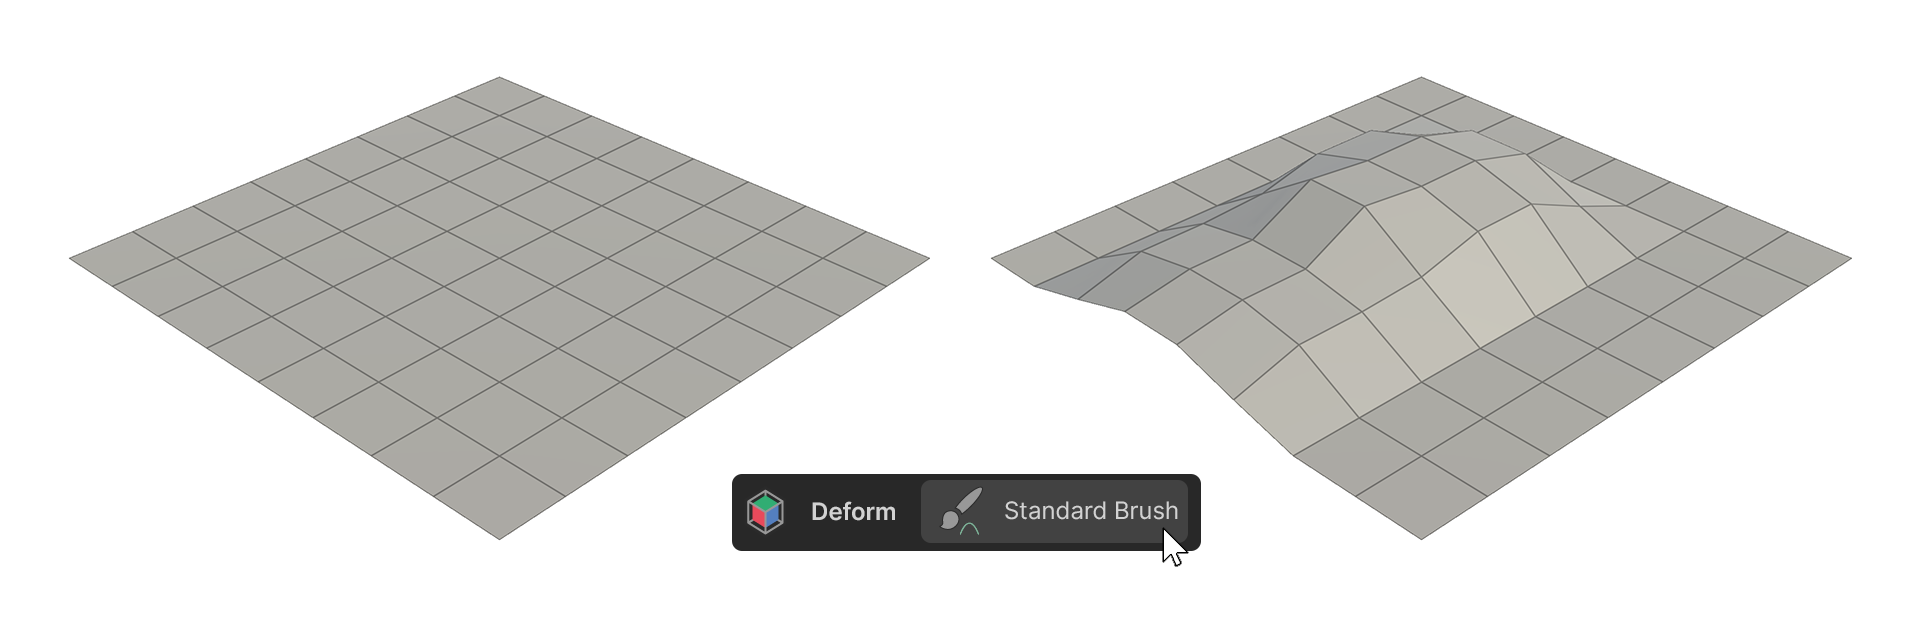 basic_Modeling_Deform_StandardBrush